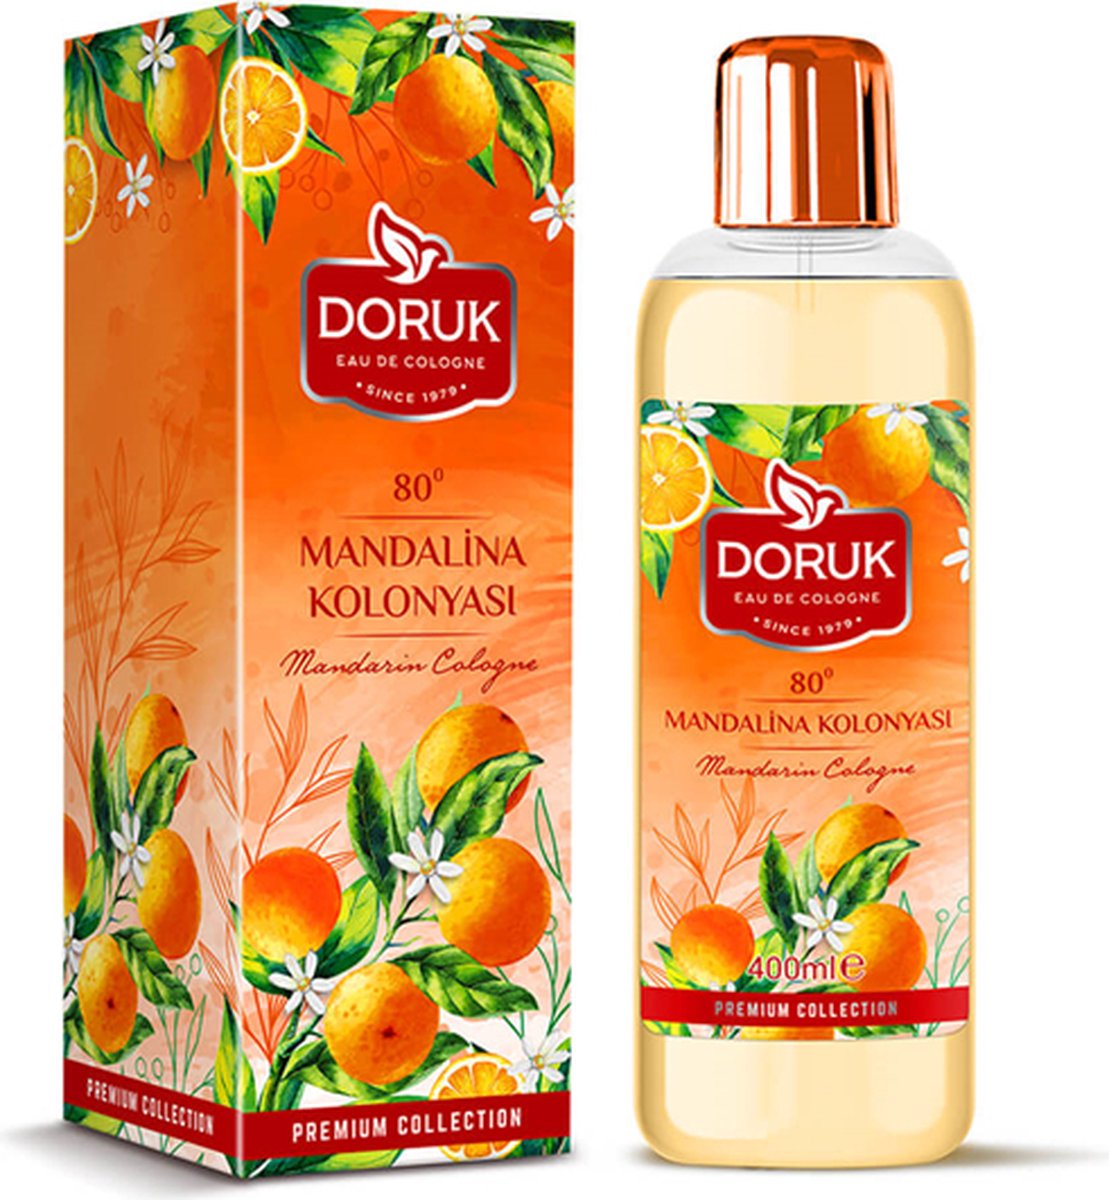 Doruk - Eau de cologne 400 ml - 80° alcohol - mandarijn cologne - Optimale desinfectie van handen